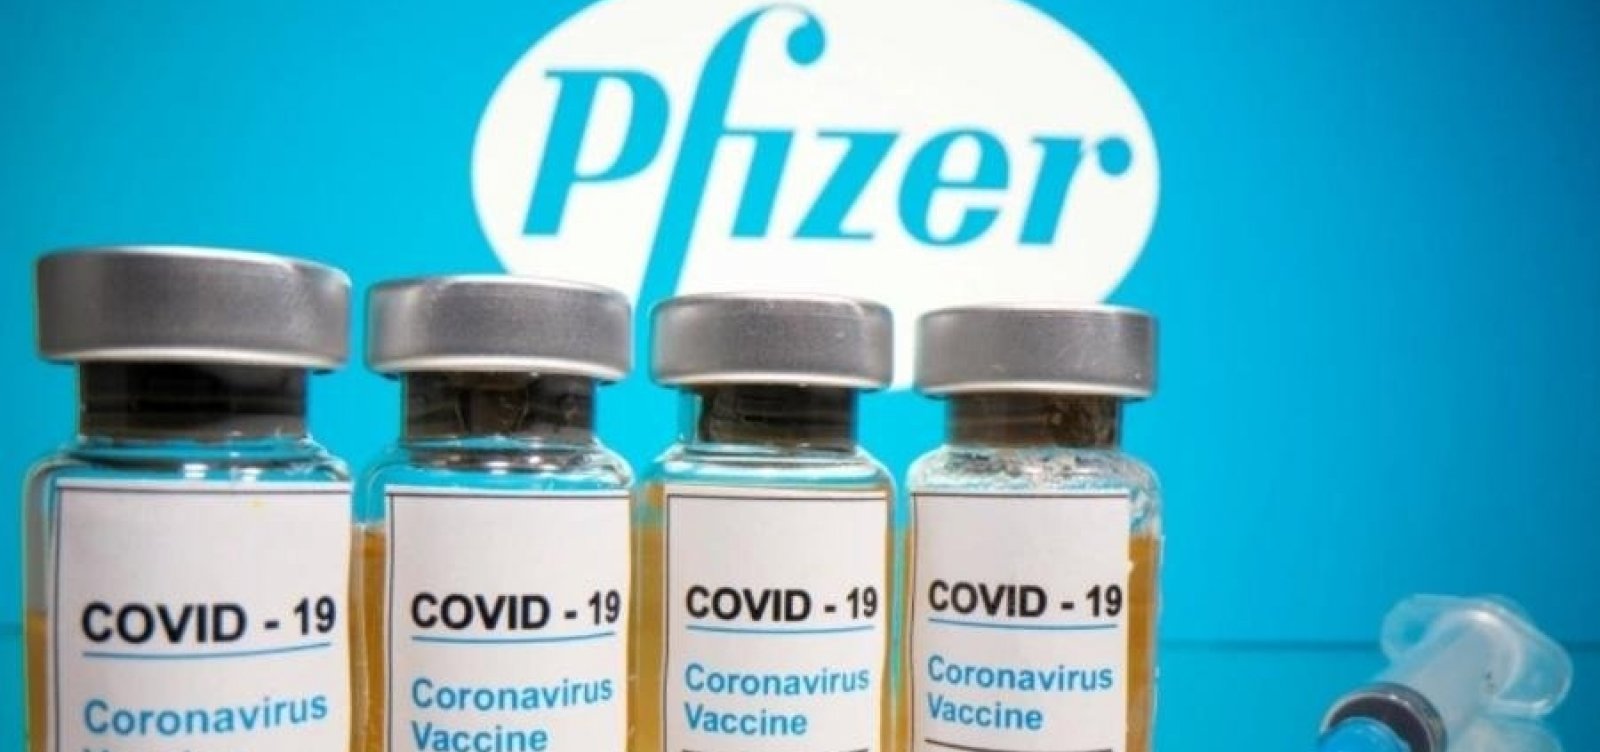 Vacina da Pfizer é eficaz contra variantes da Covid-19, indica estudo